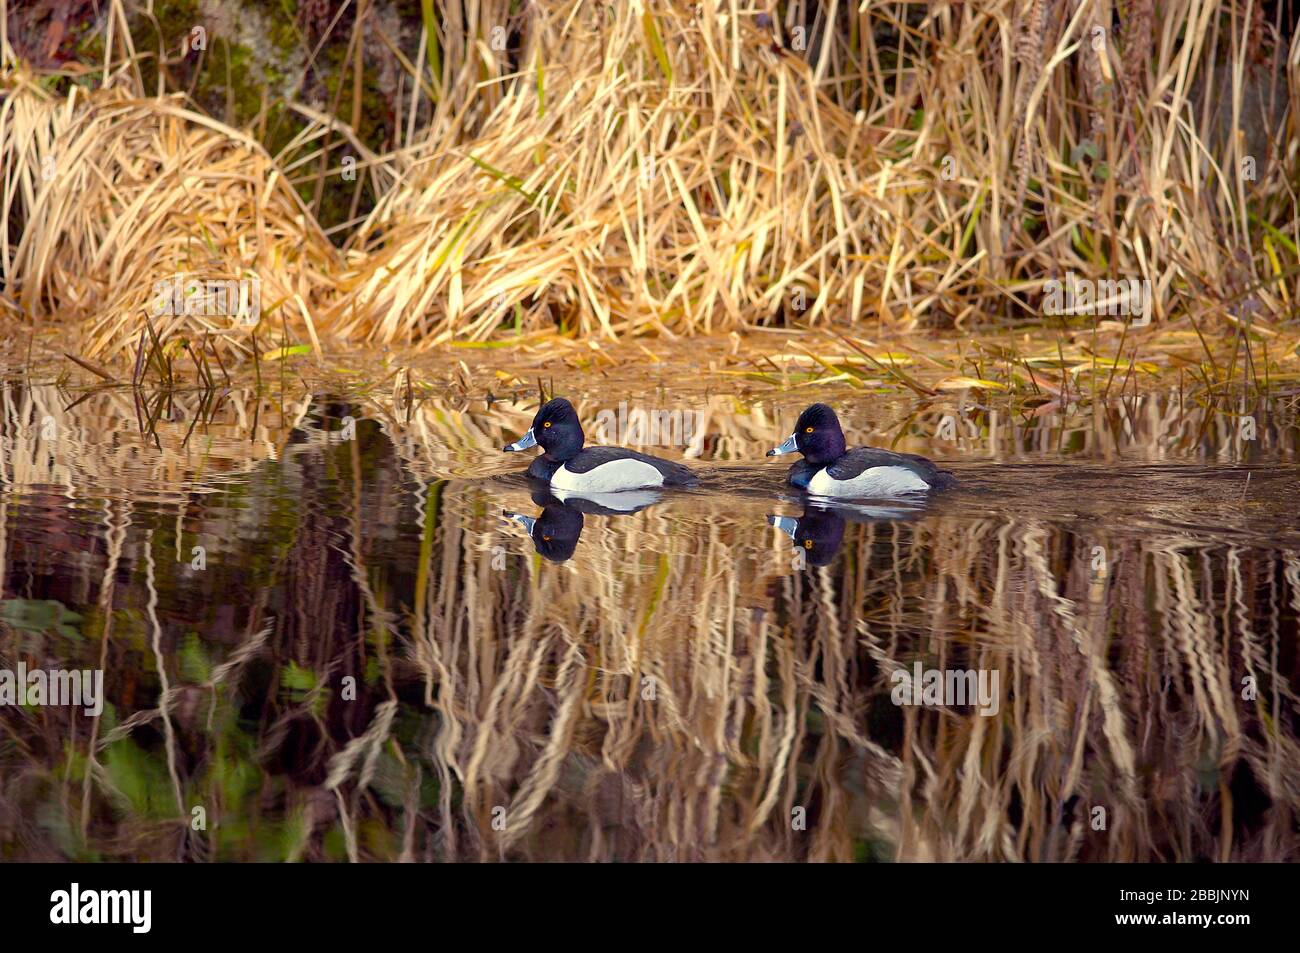 Due anatre maschi a collo d'anello (Aythya collaris) nuotano in un fiume con erba secca riflessa nell'acqua. Foto Stock